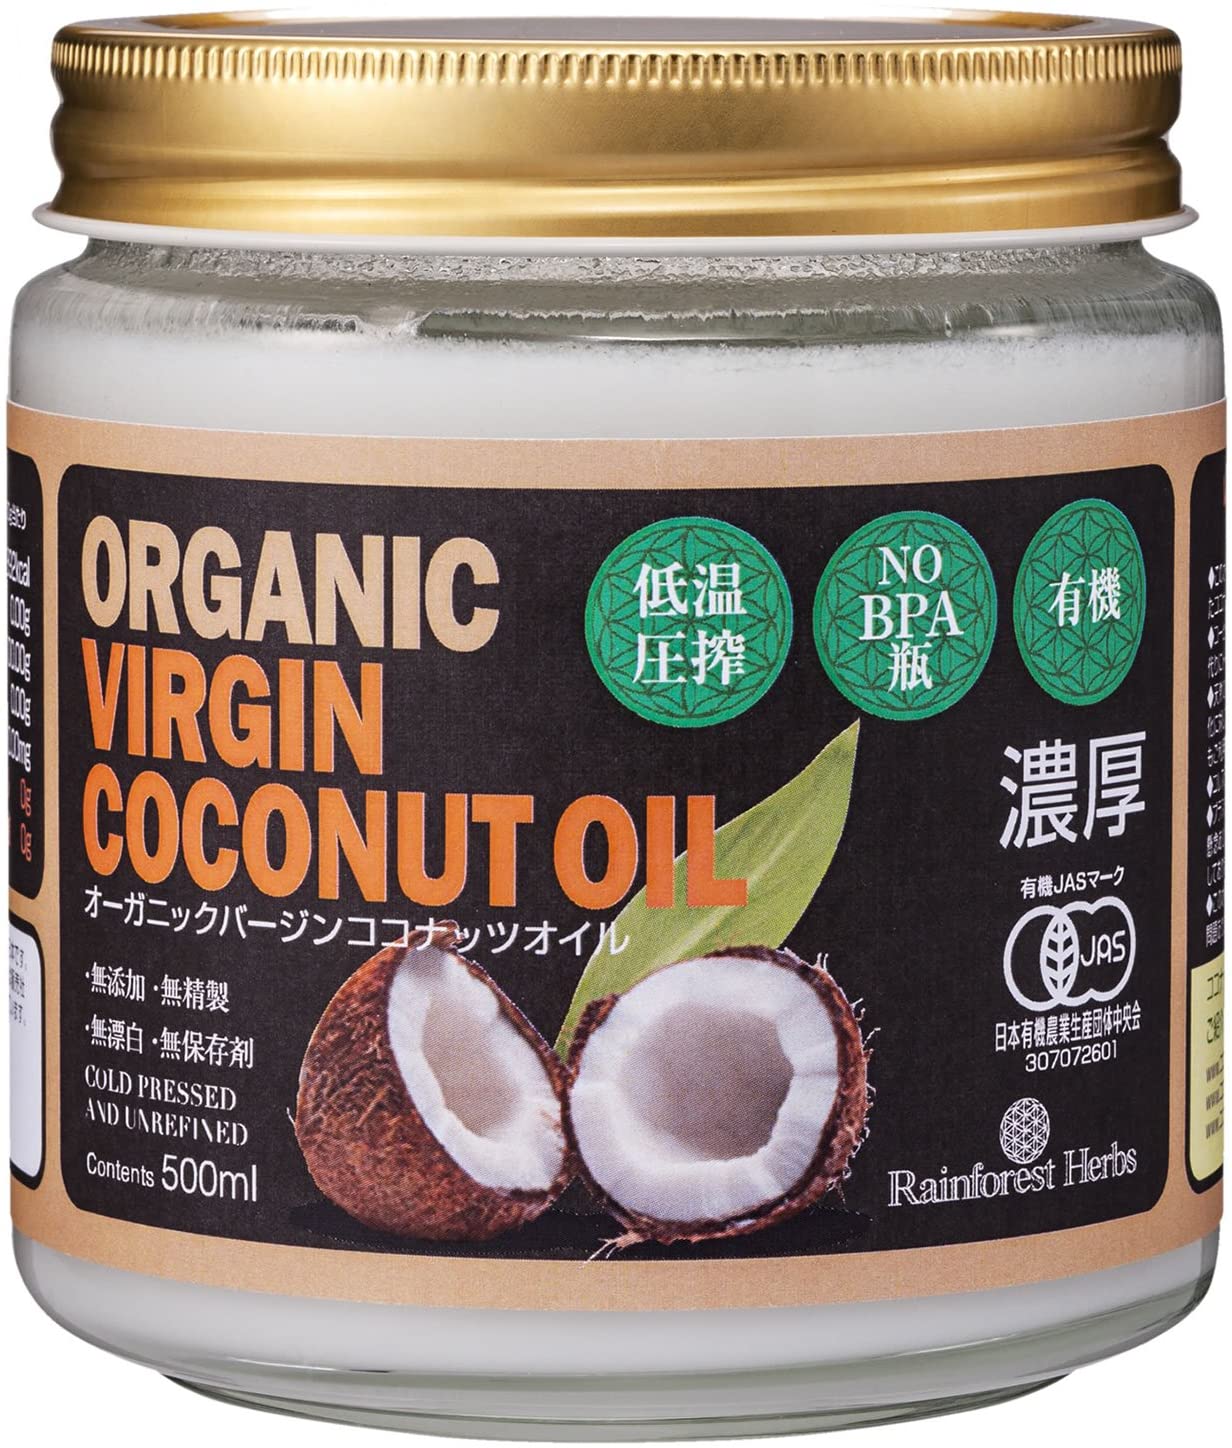 ココナッツ本来の栄養や香りに近い「バージンココナッツオイル」